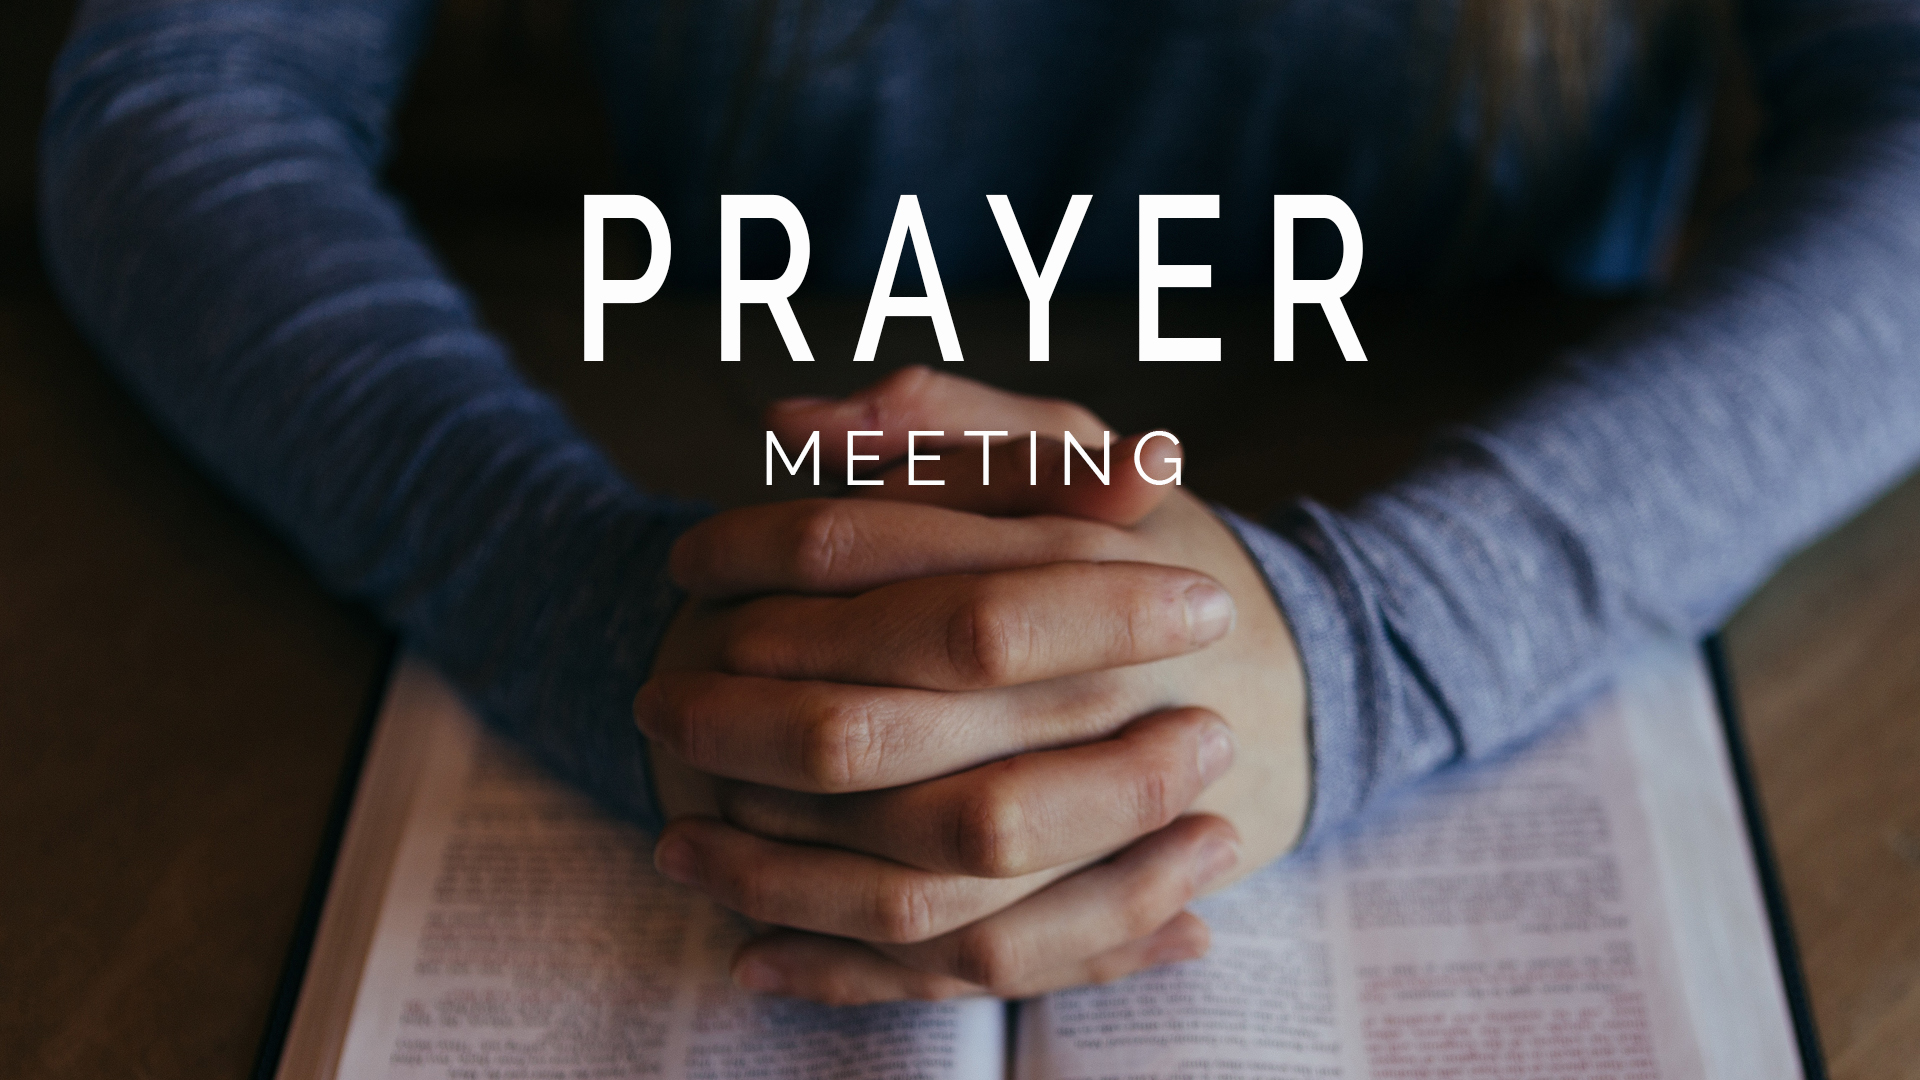 PRAYER MEETING image